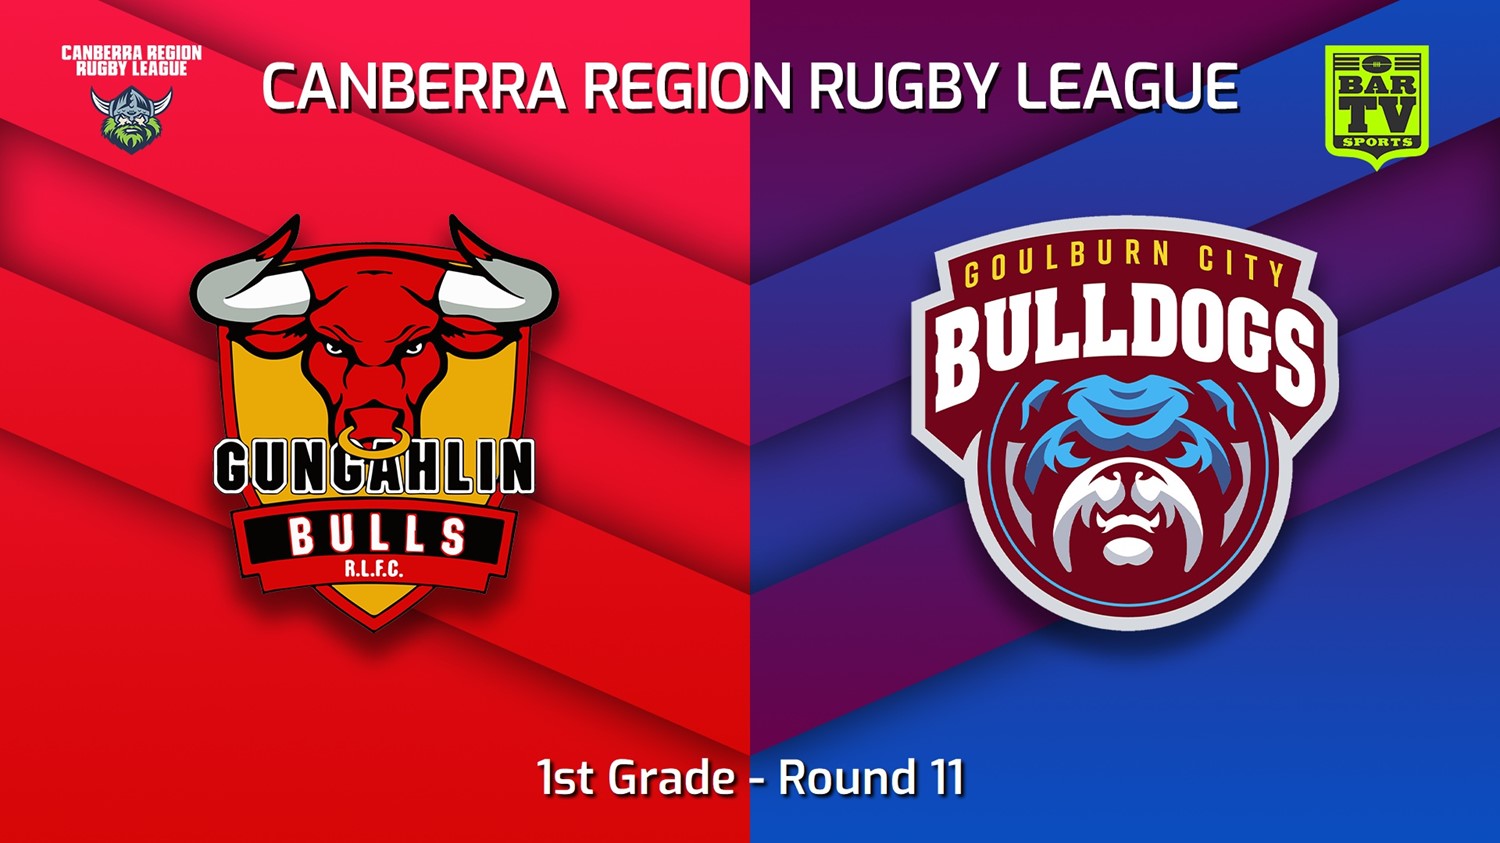 220702-Canberra Round 11 - 1st Grade - Gungahlin Bulls v Goulburn City Bulldogs Slate Image